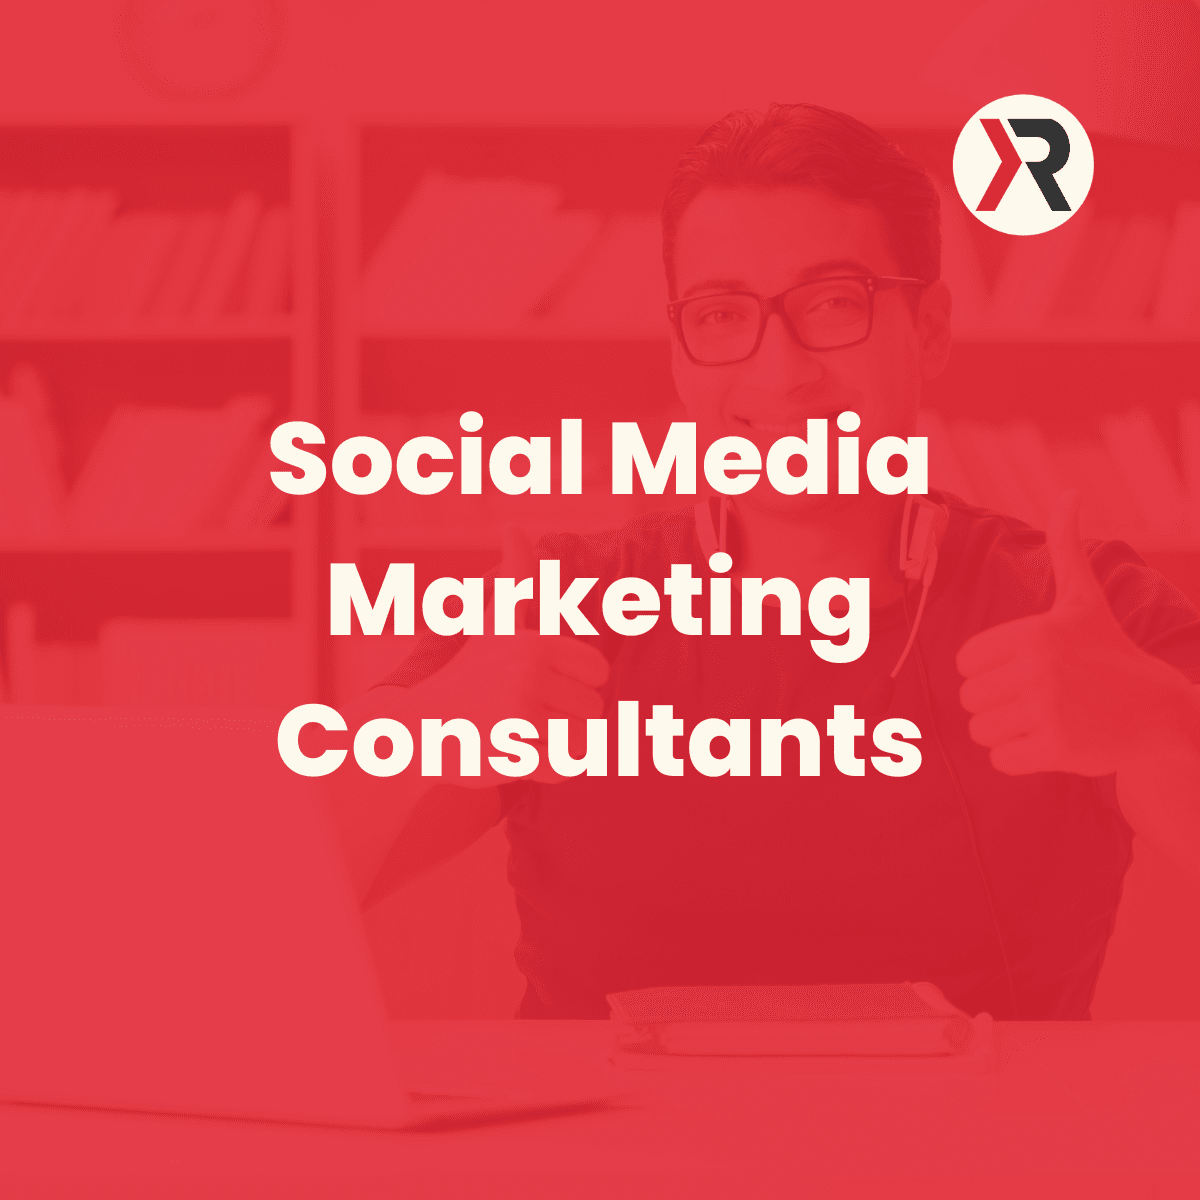 social media marketing consultants